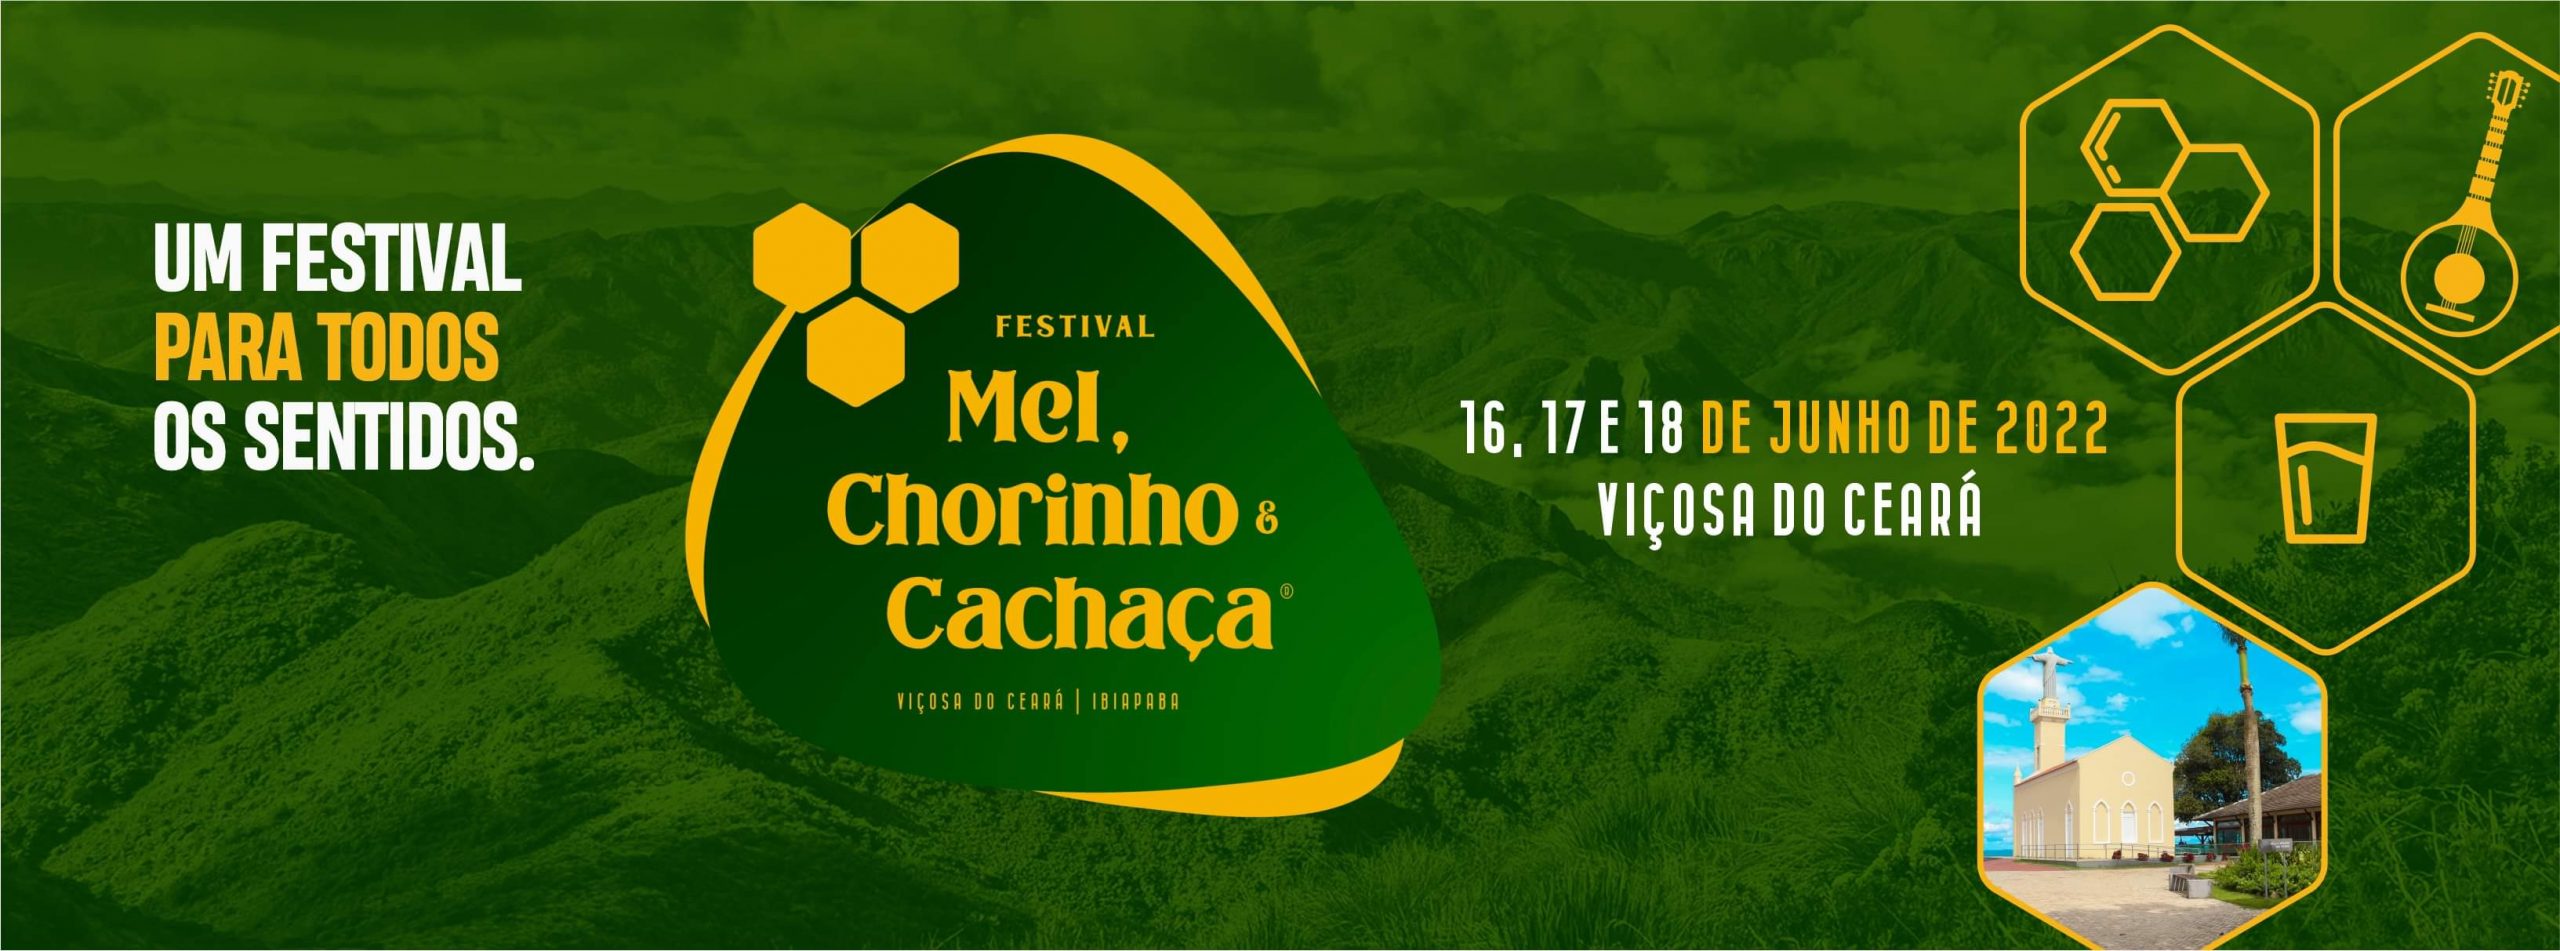 Festival Mel, Chorinho e Cachaça 2022 (imagem: Divulgação)